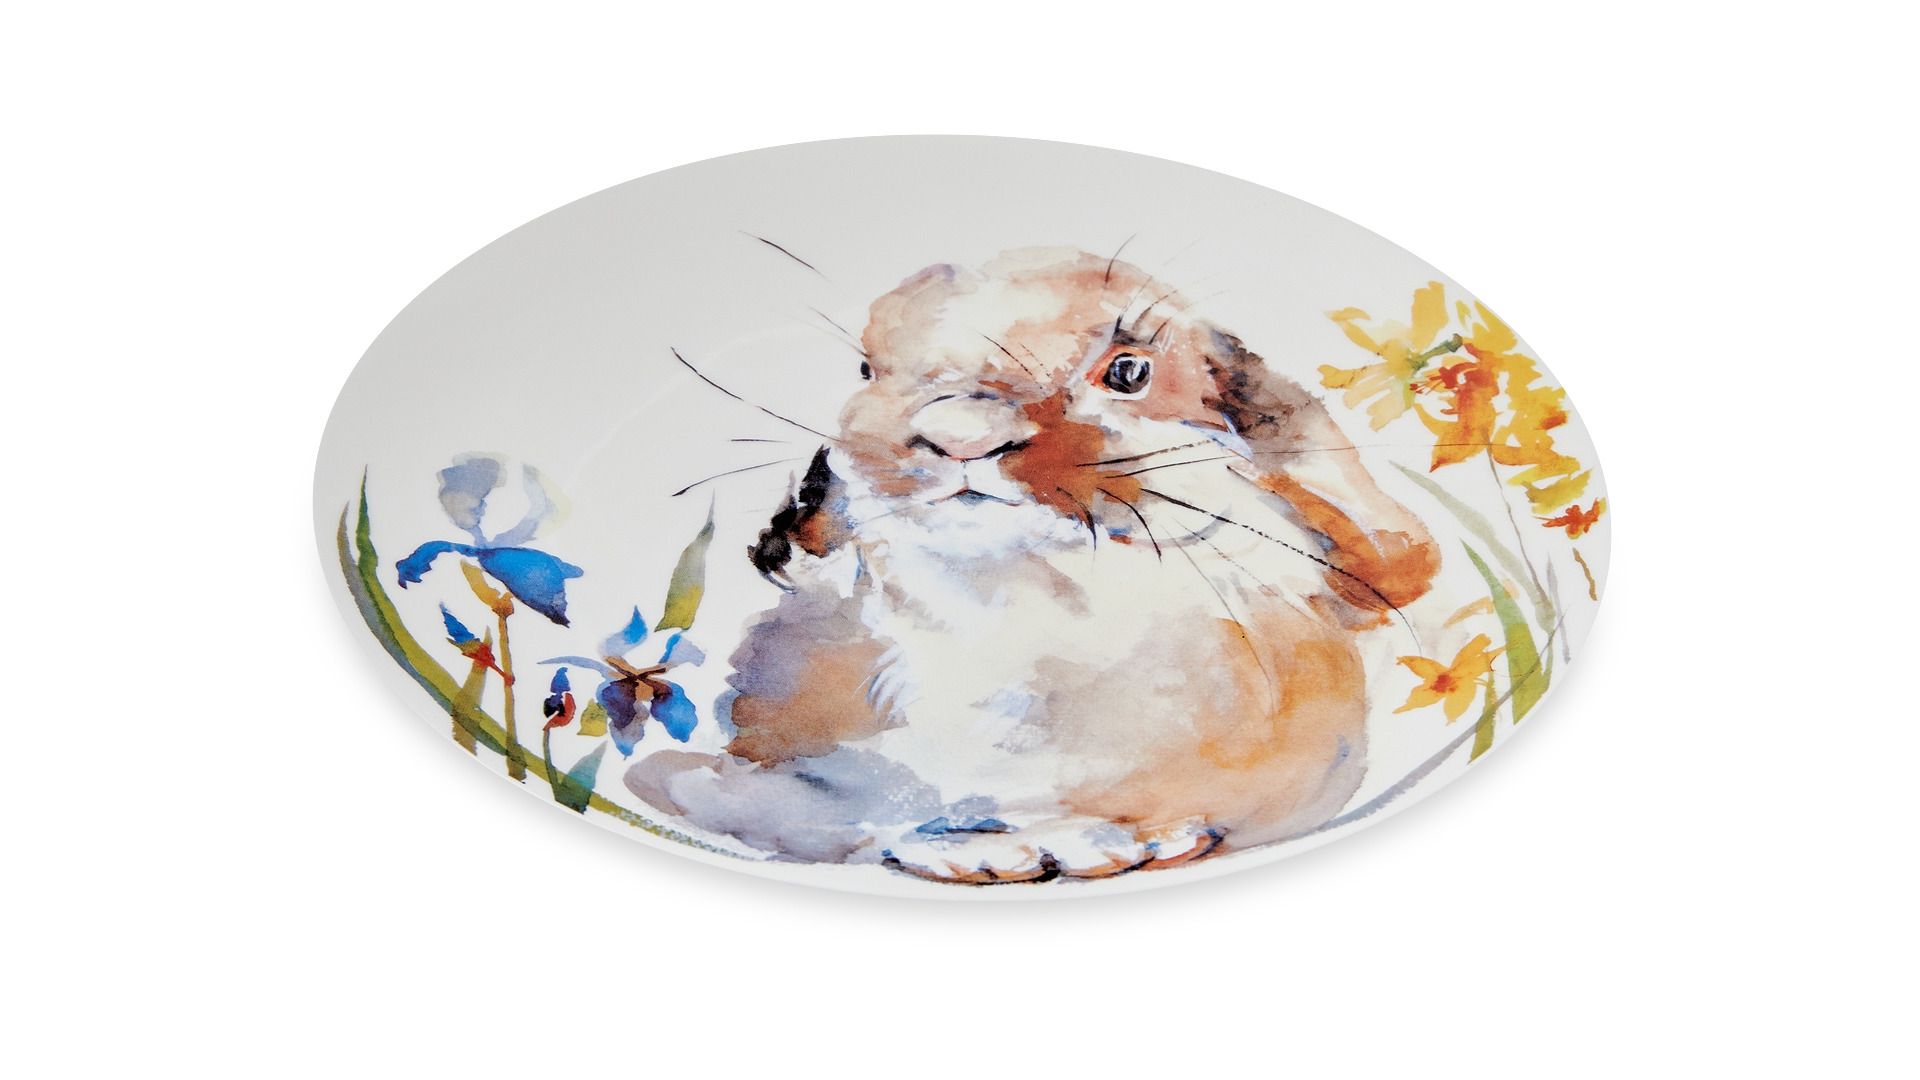 Тарелка обеденная углубленная Mix&Match Синергия Пасхальный кролик 27 см, фарфор костяной